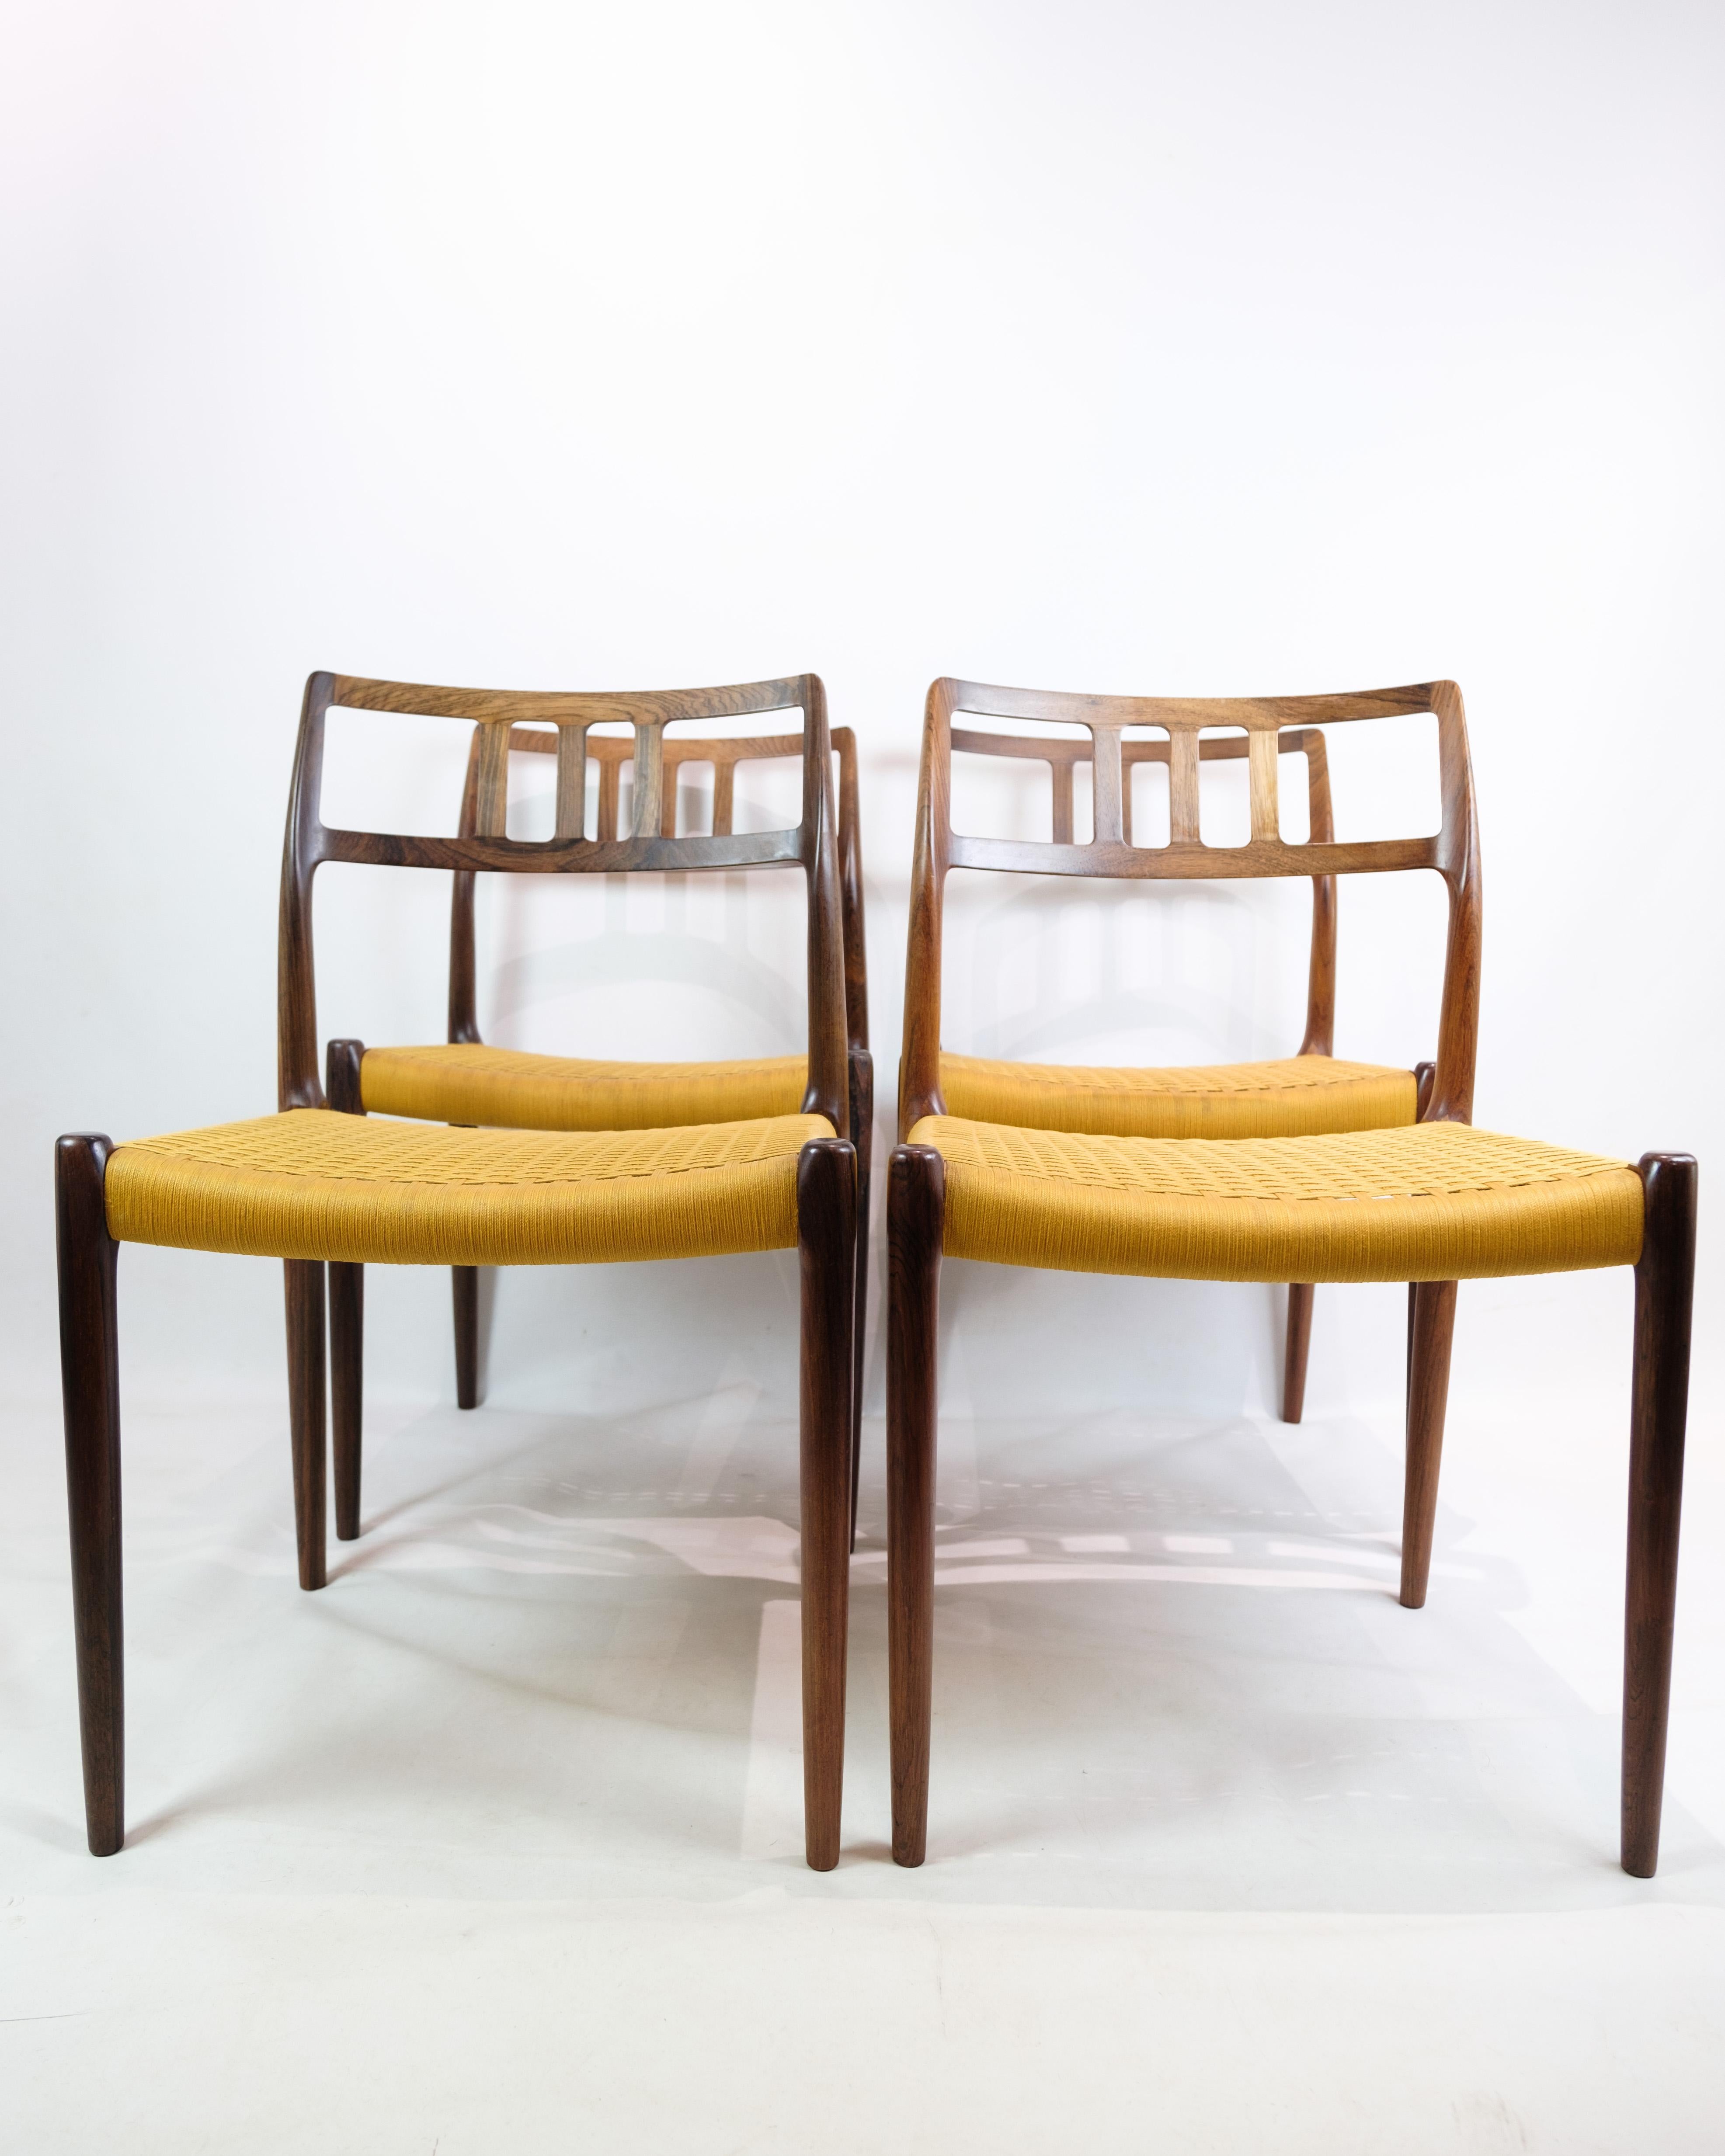 Ensemble de quatre chaises de salle à manger, modèle 79, conçu par Niels O. Møller et produit par I.L.A. Møller Møbelfabrik vers 1960. Ces chaises représentent une partie emblématique de l'histoire du design du mobilier danois, où Niels O. Møller